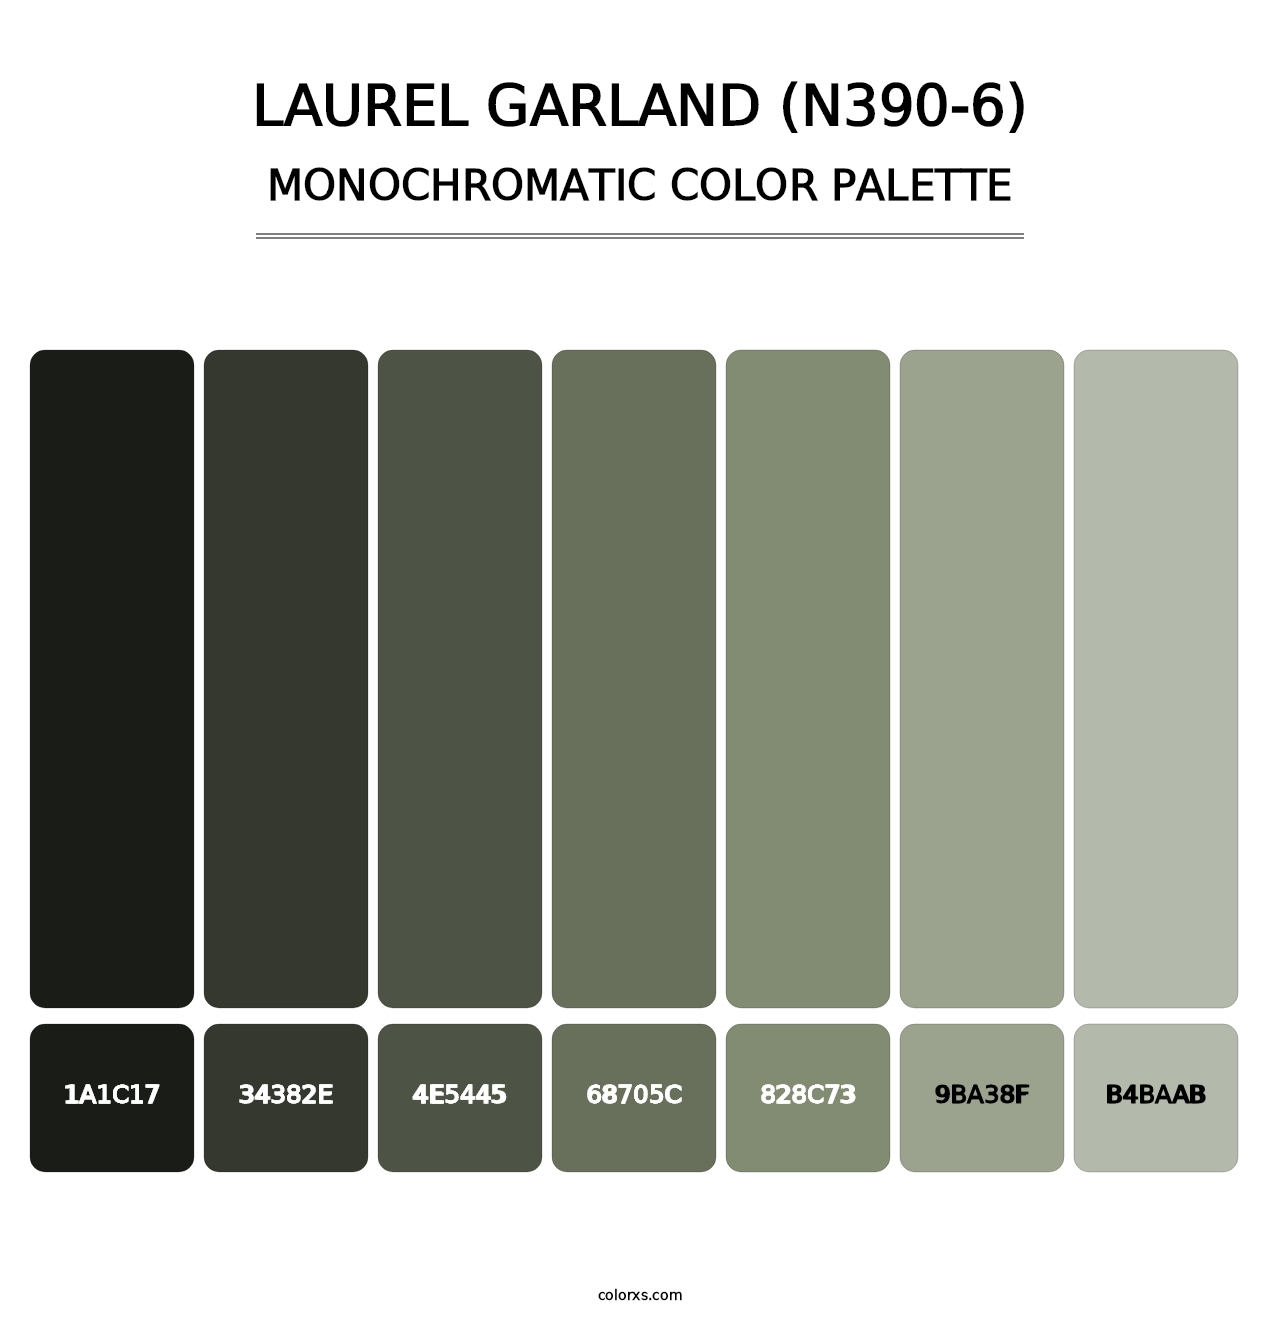 Laurel Garland (N390-6) - Monochromatic Color Palette